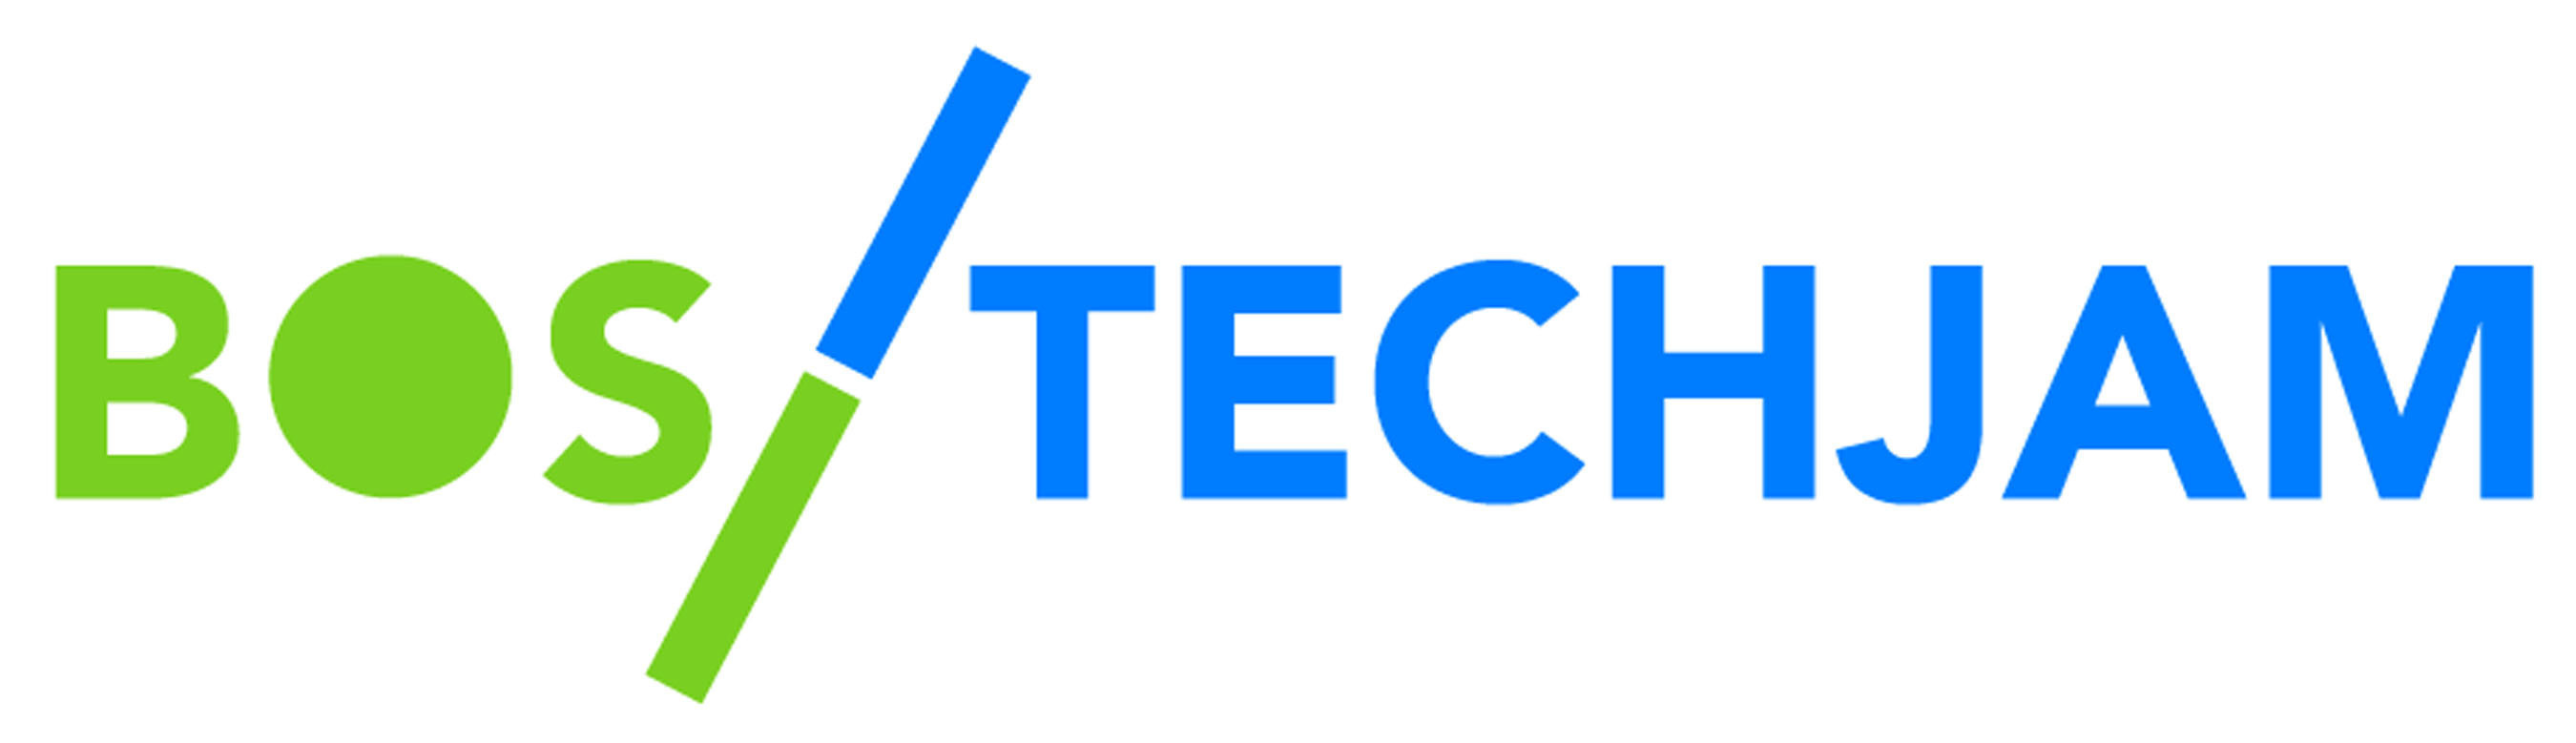 Boston TechJam logo